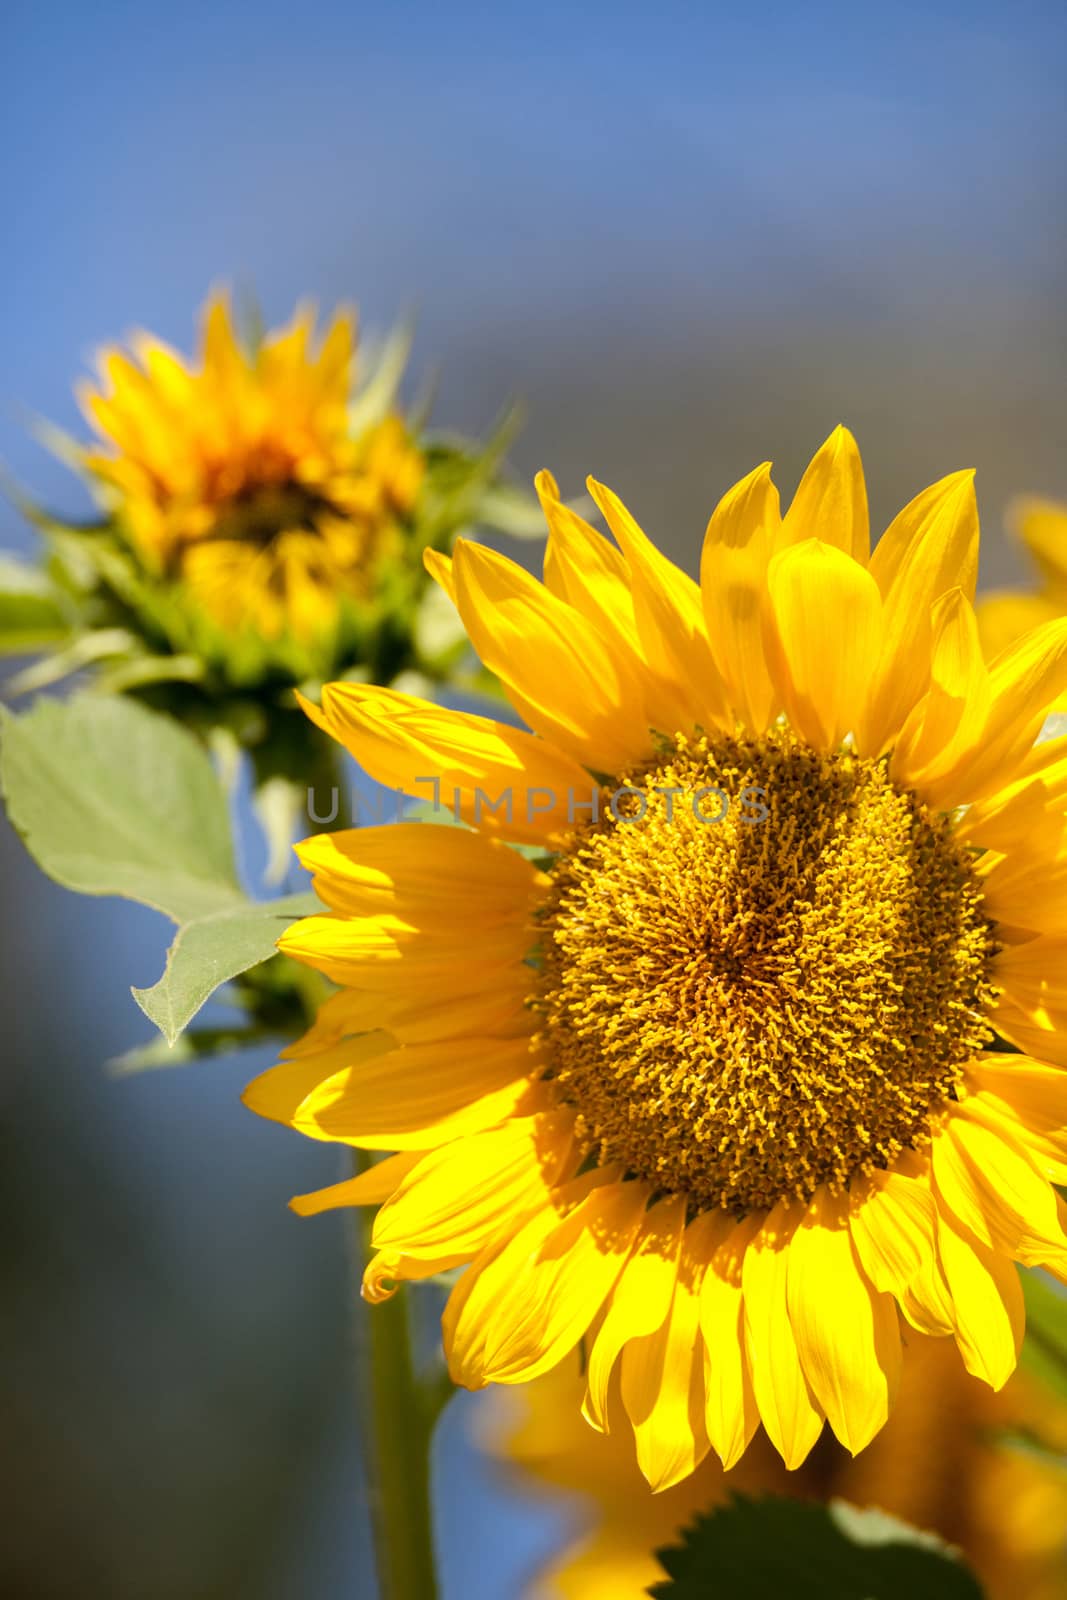 Bright yellow Vincent fresh sunflower Helianthus annuus by steffstarr